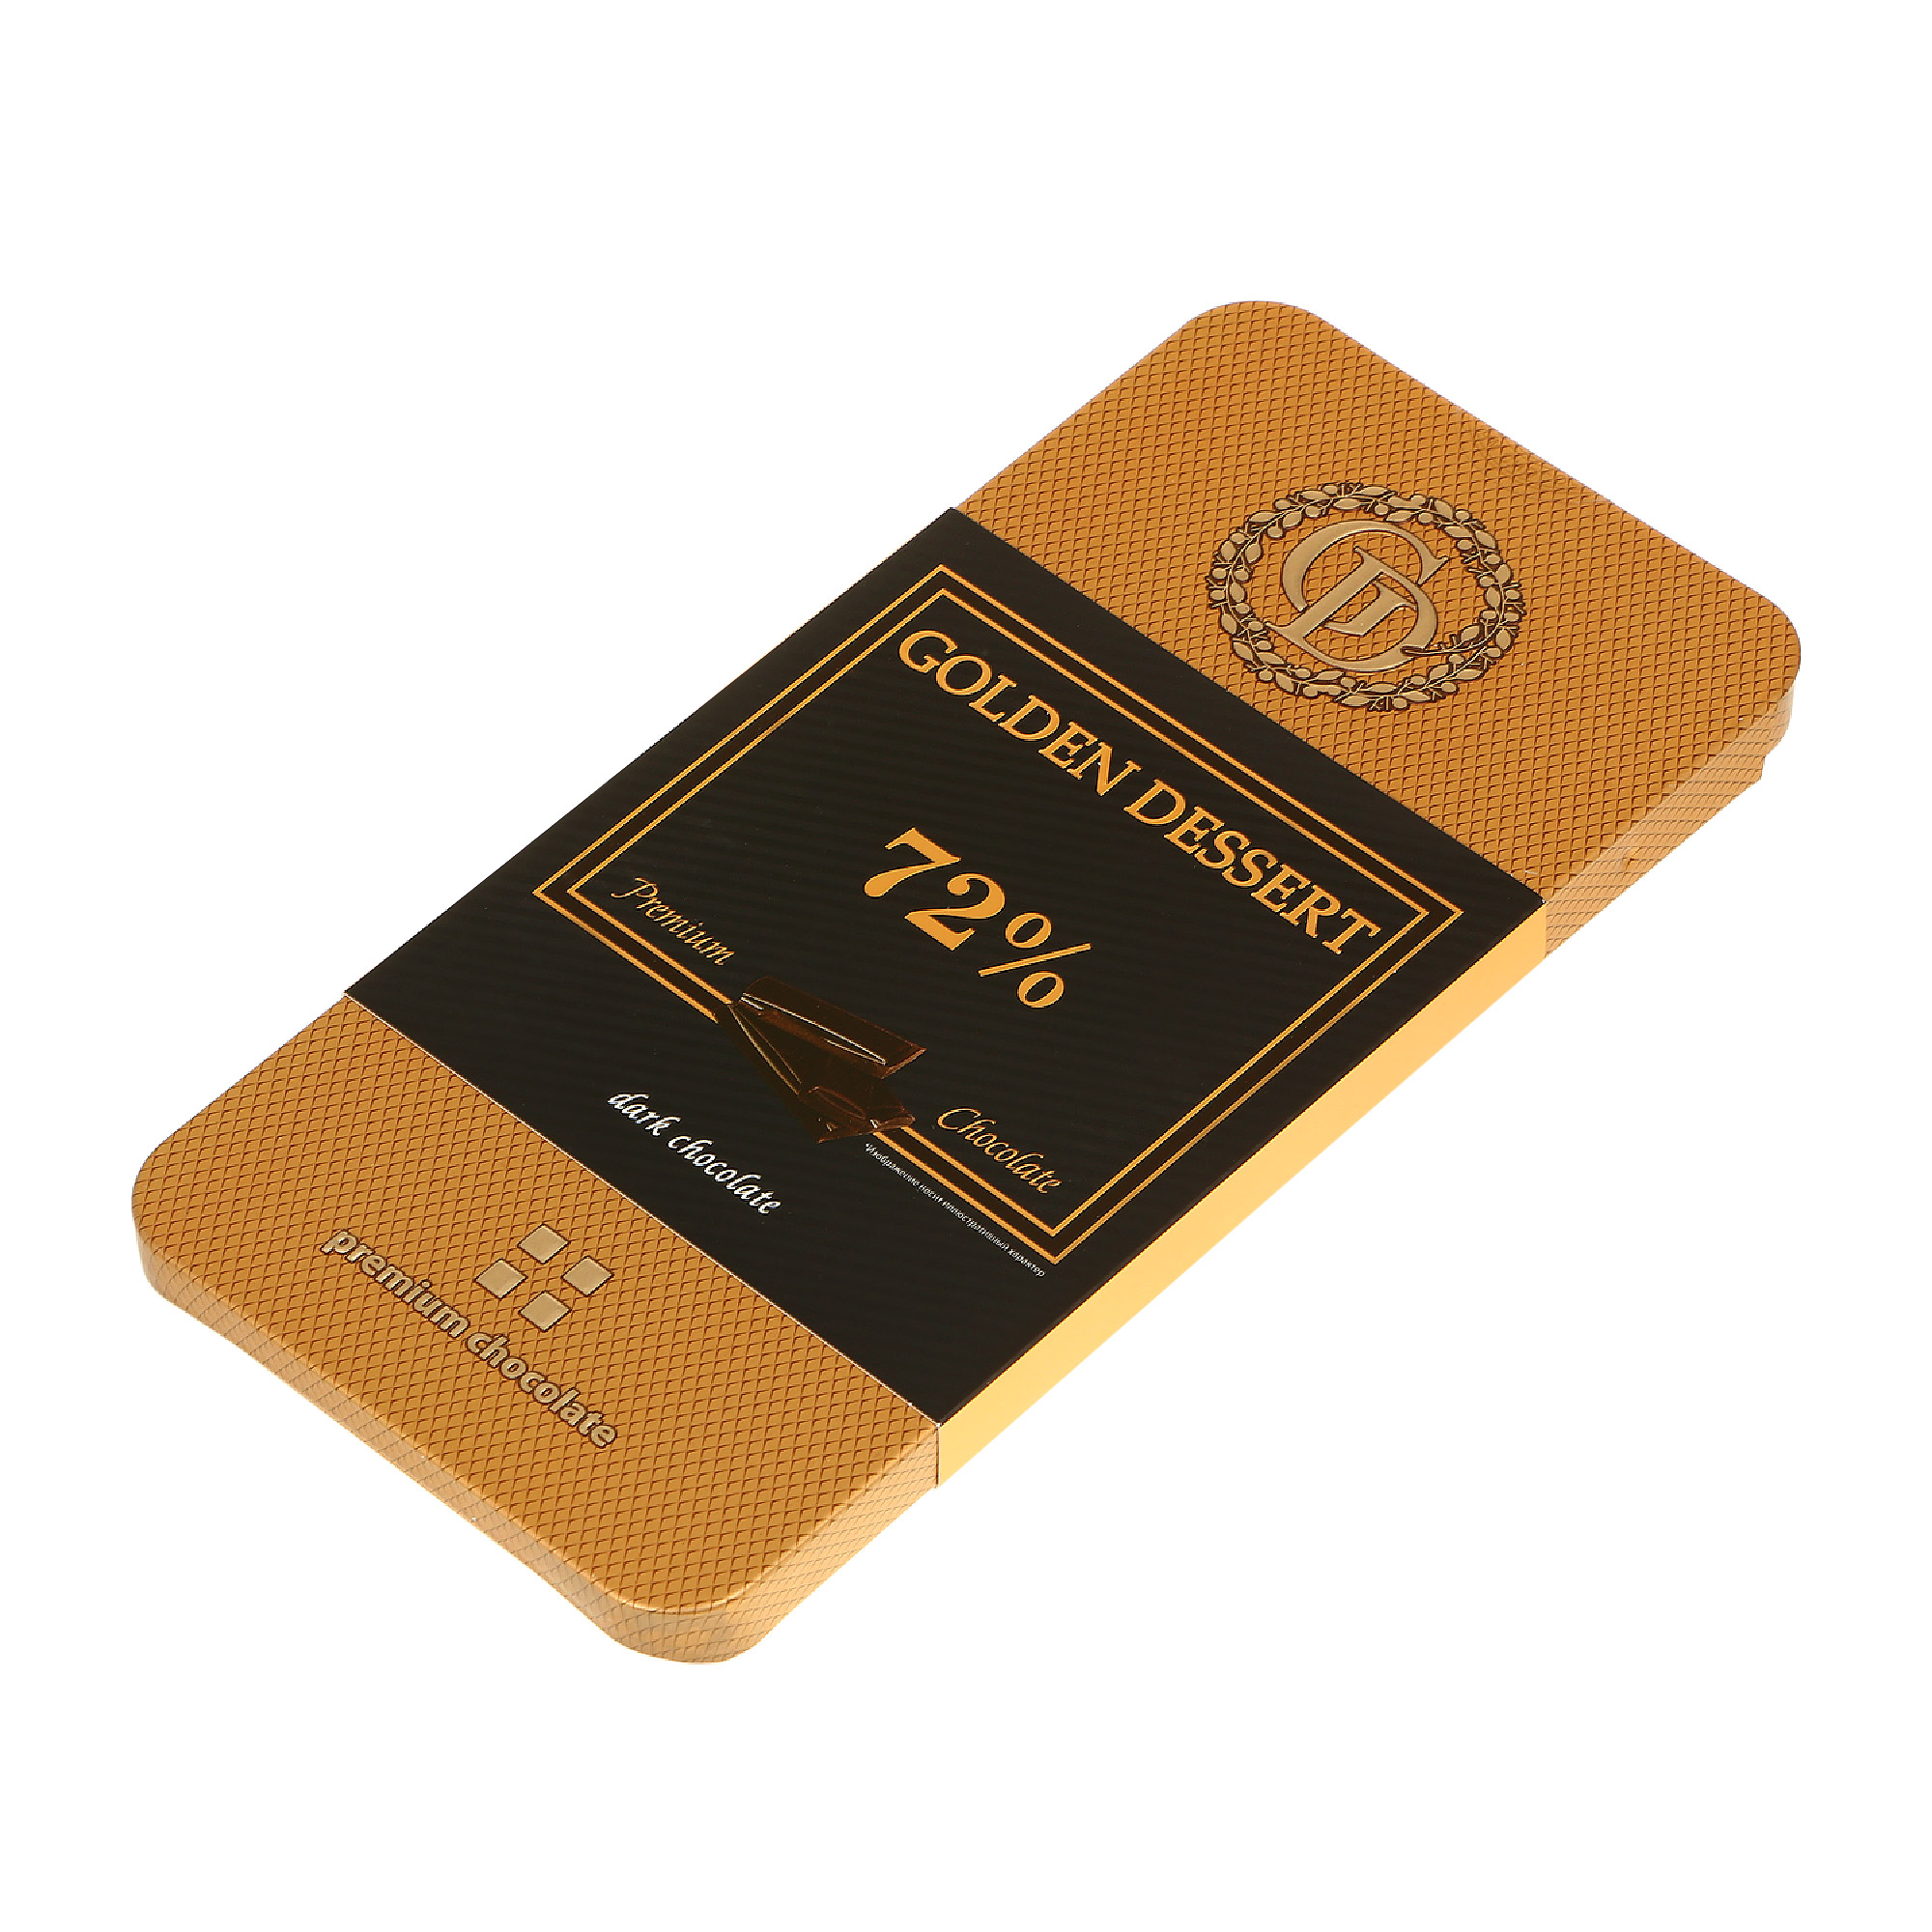 Шоколад горький GOLDEN DESSERT 72% 100 г шоколад ozera dark горький какао 55% 90 гр